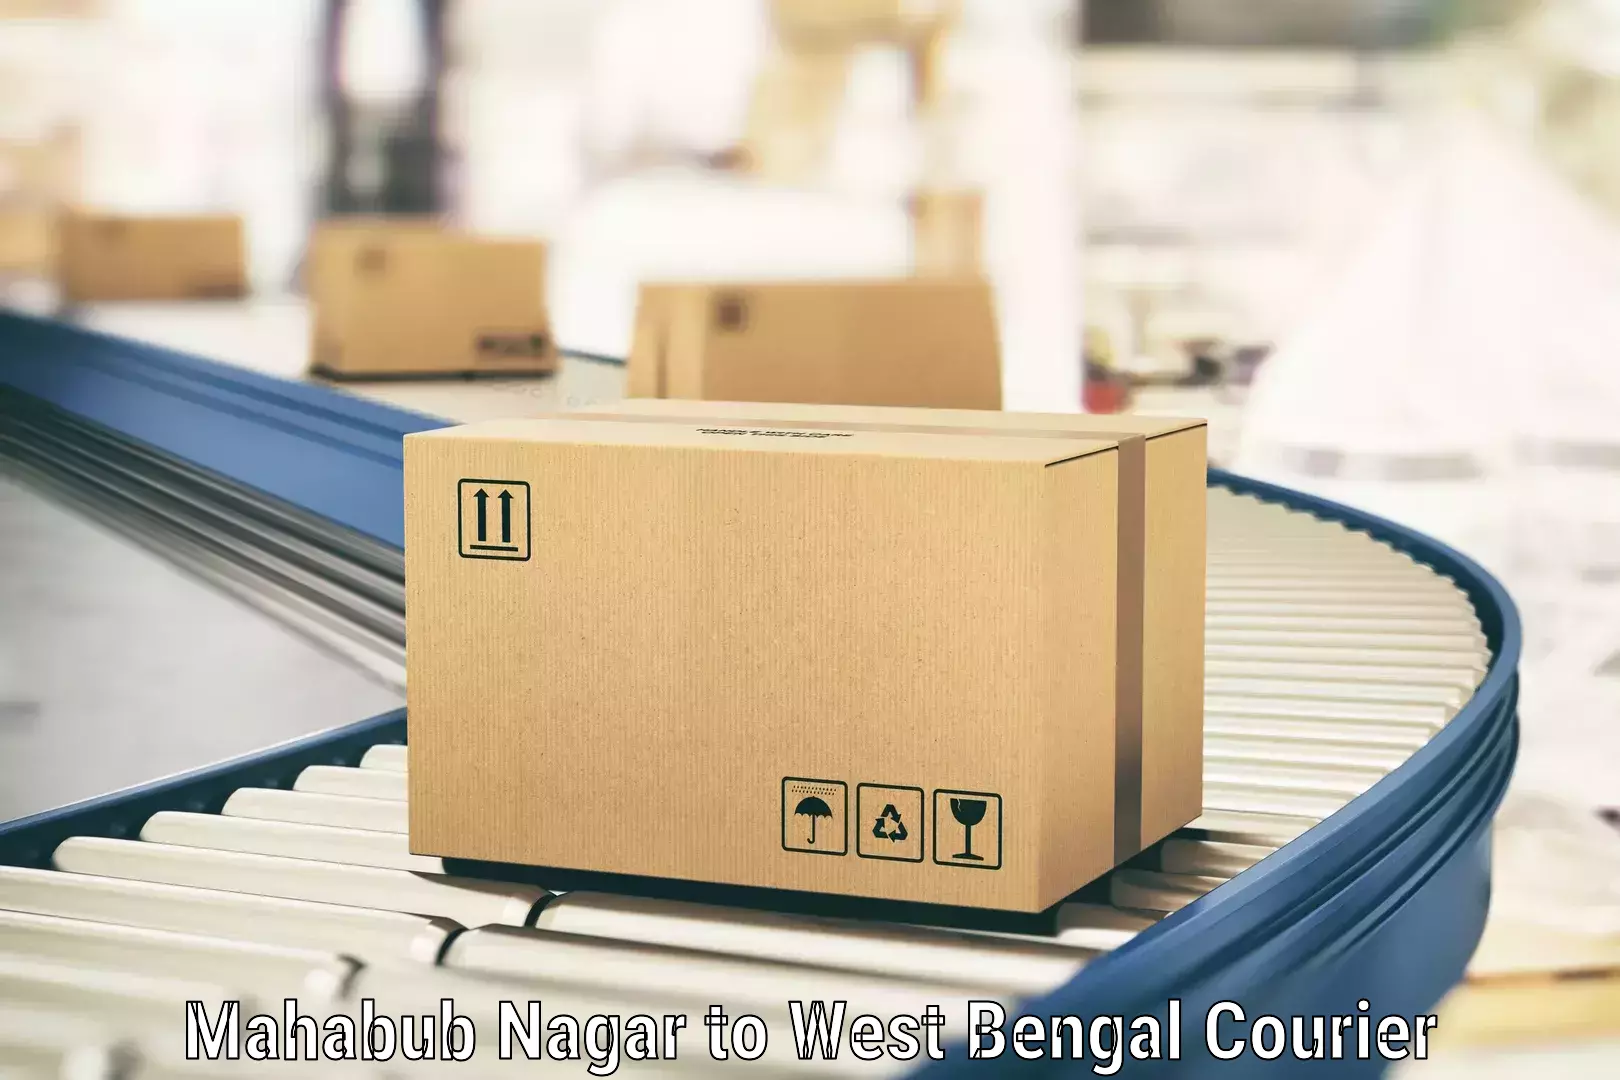 Fragile item shipping in Mahabub Nagar to Bongaon